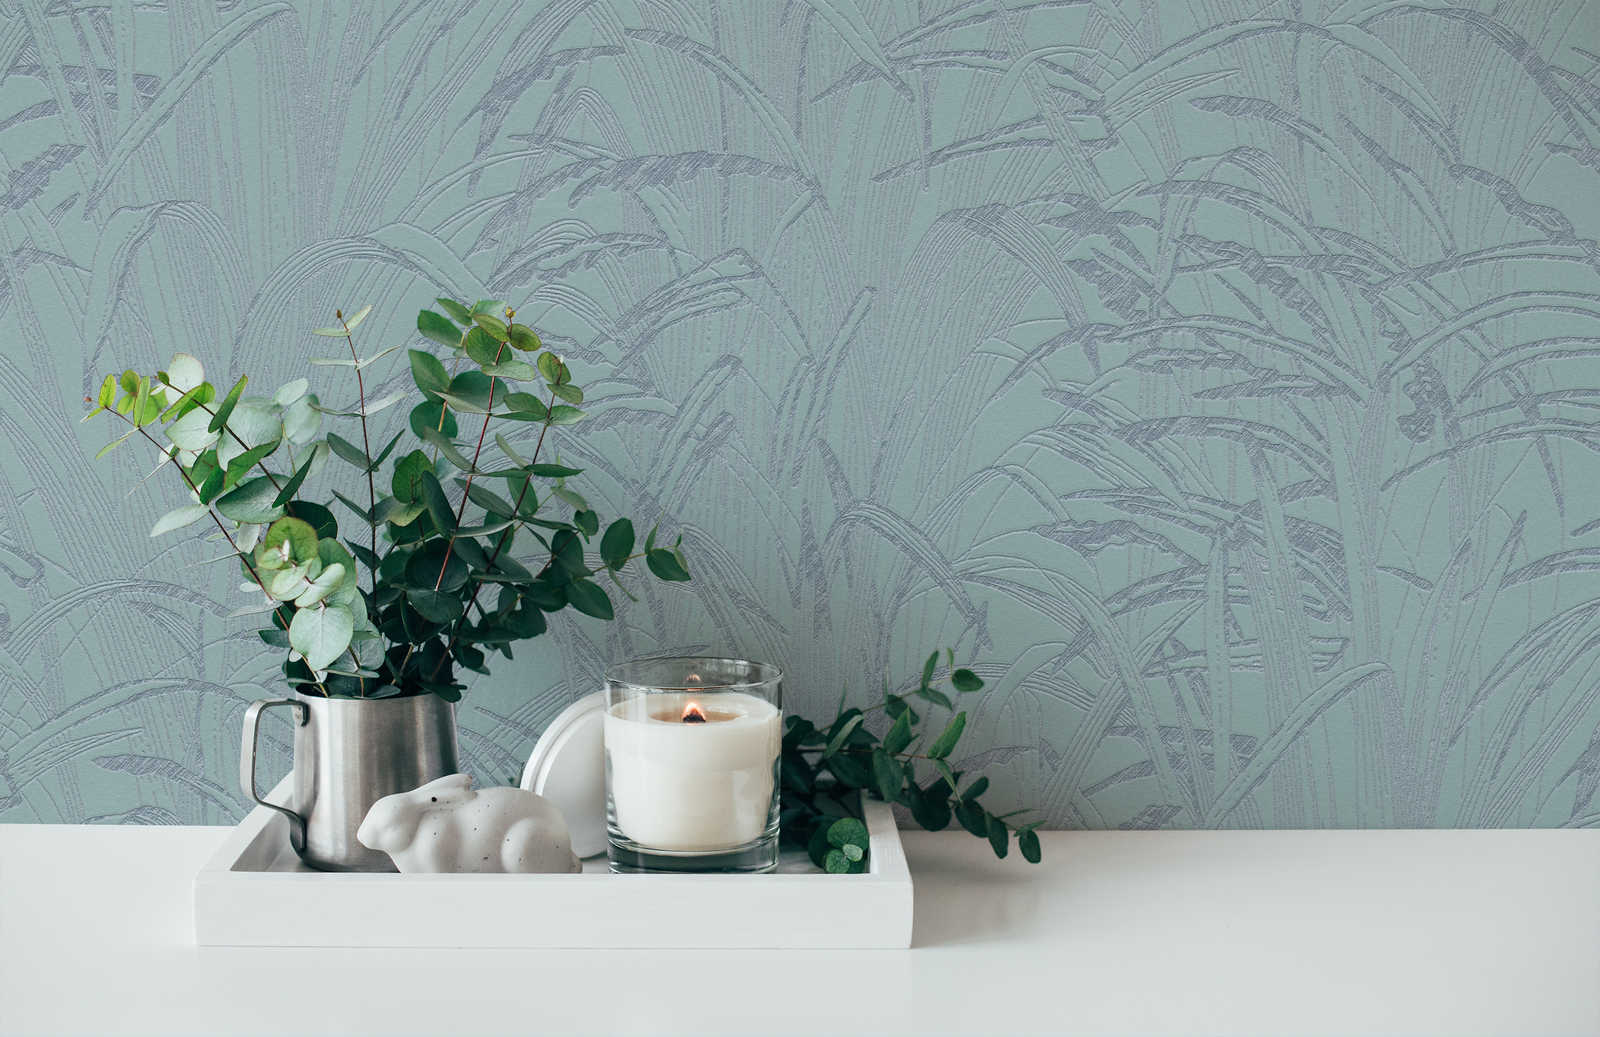             Leaves wallpaper metallic design - blue, metallic
        